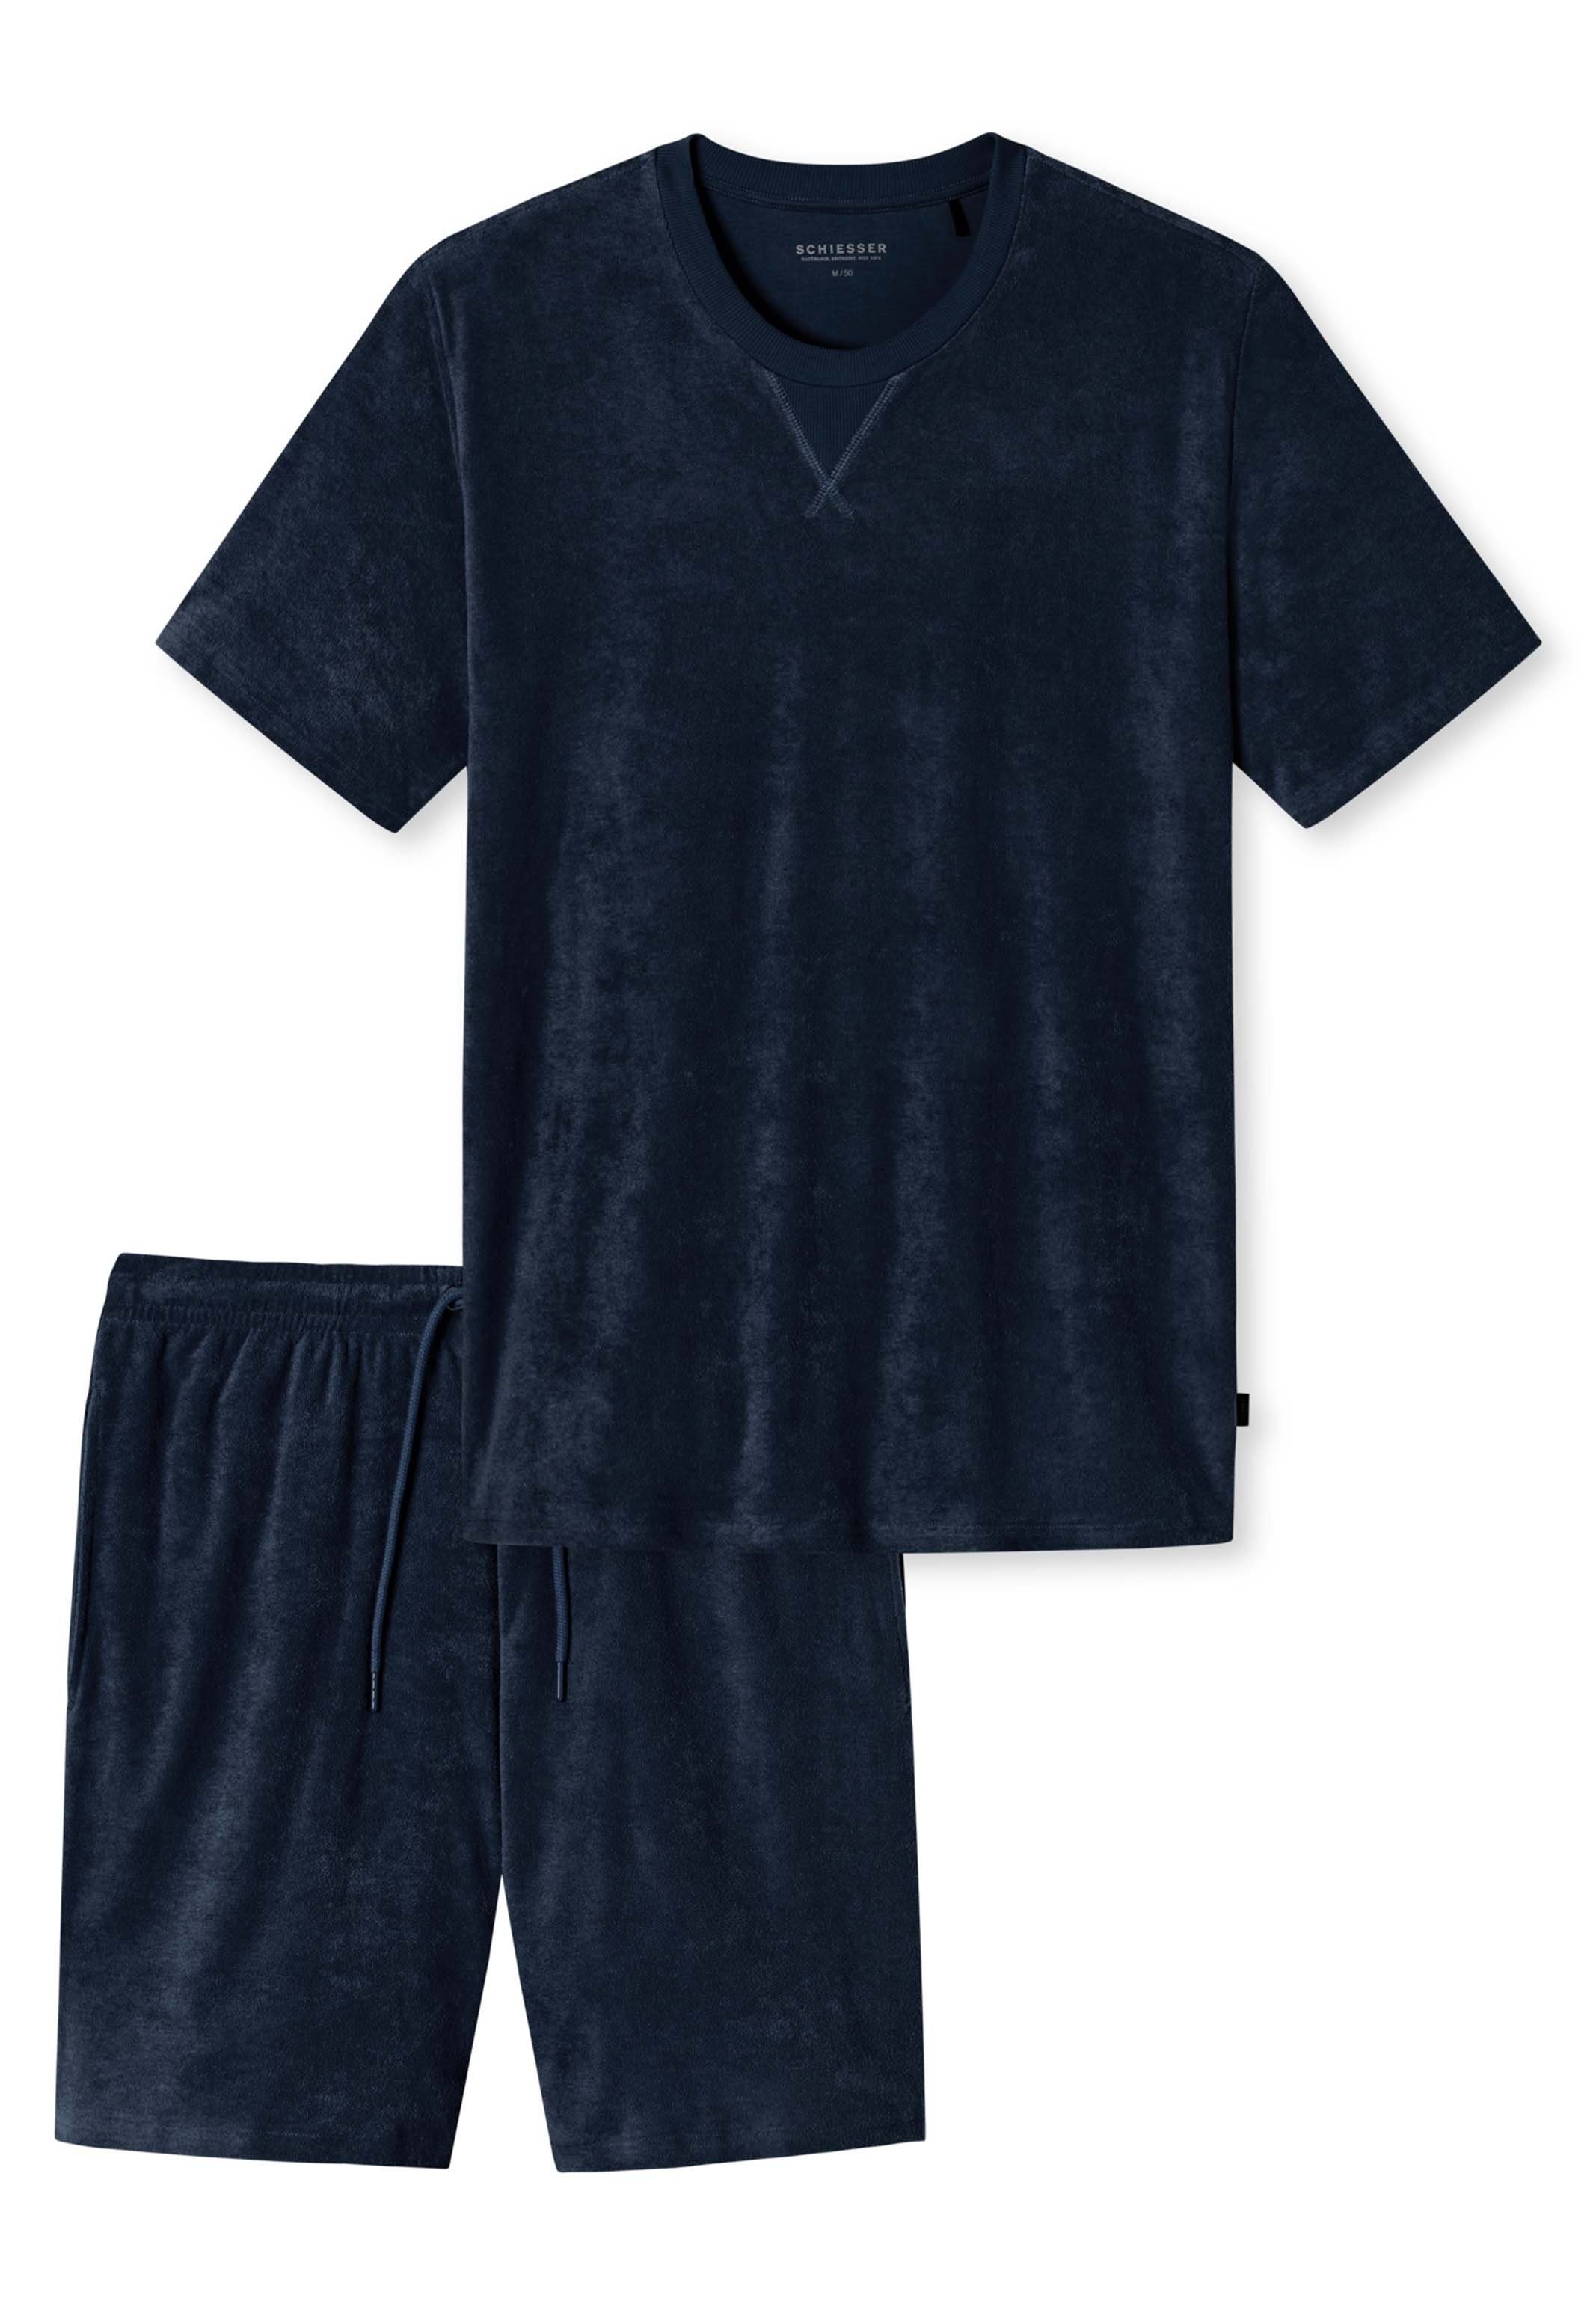 Wäsche/Bademode Nachtwäsche Schiesser Pyjama Frottee Nightwear (Set, 2 tlg) Schlafanzug - Baumwolle - Kurzarm Shirt mit Rundhals